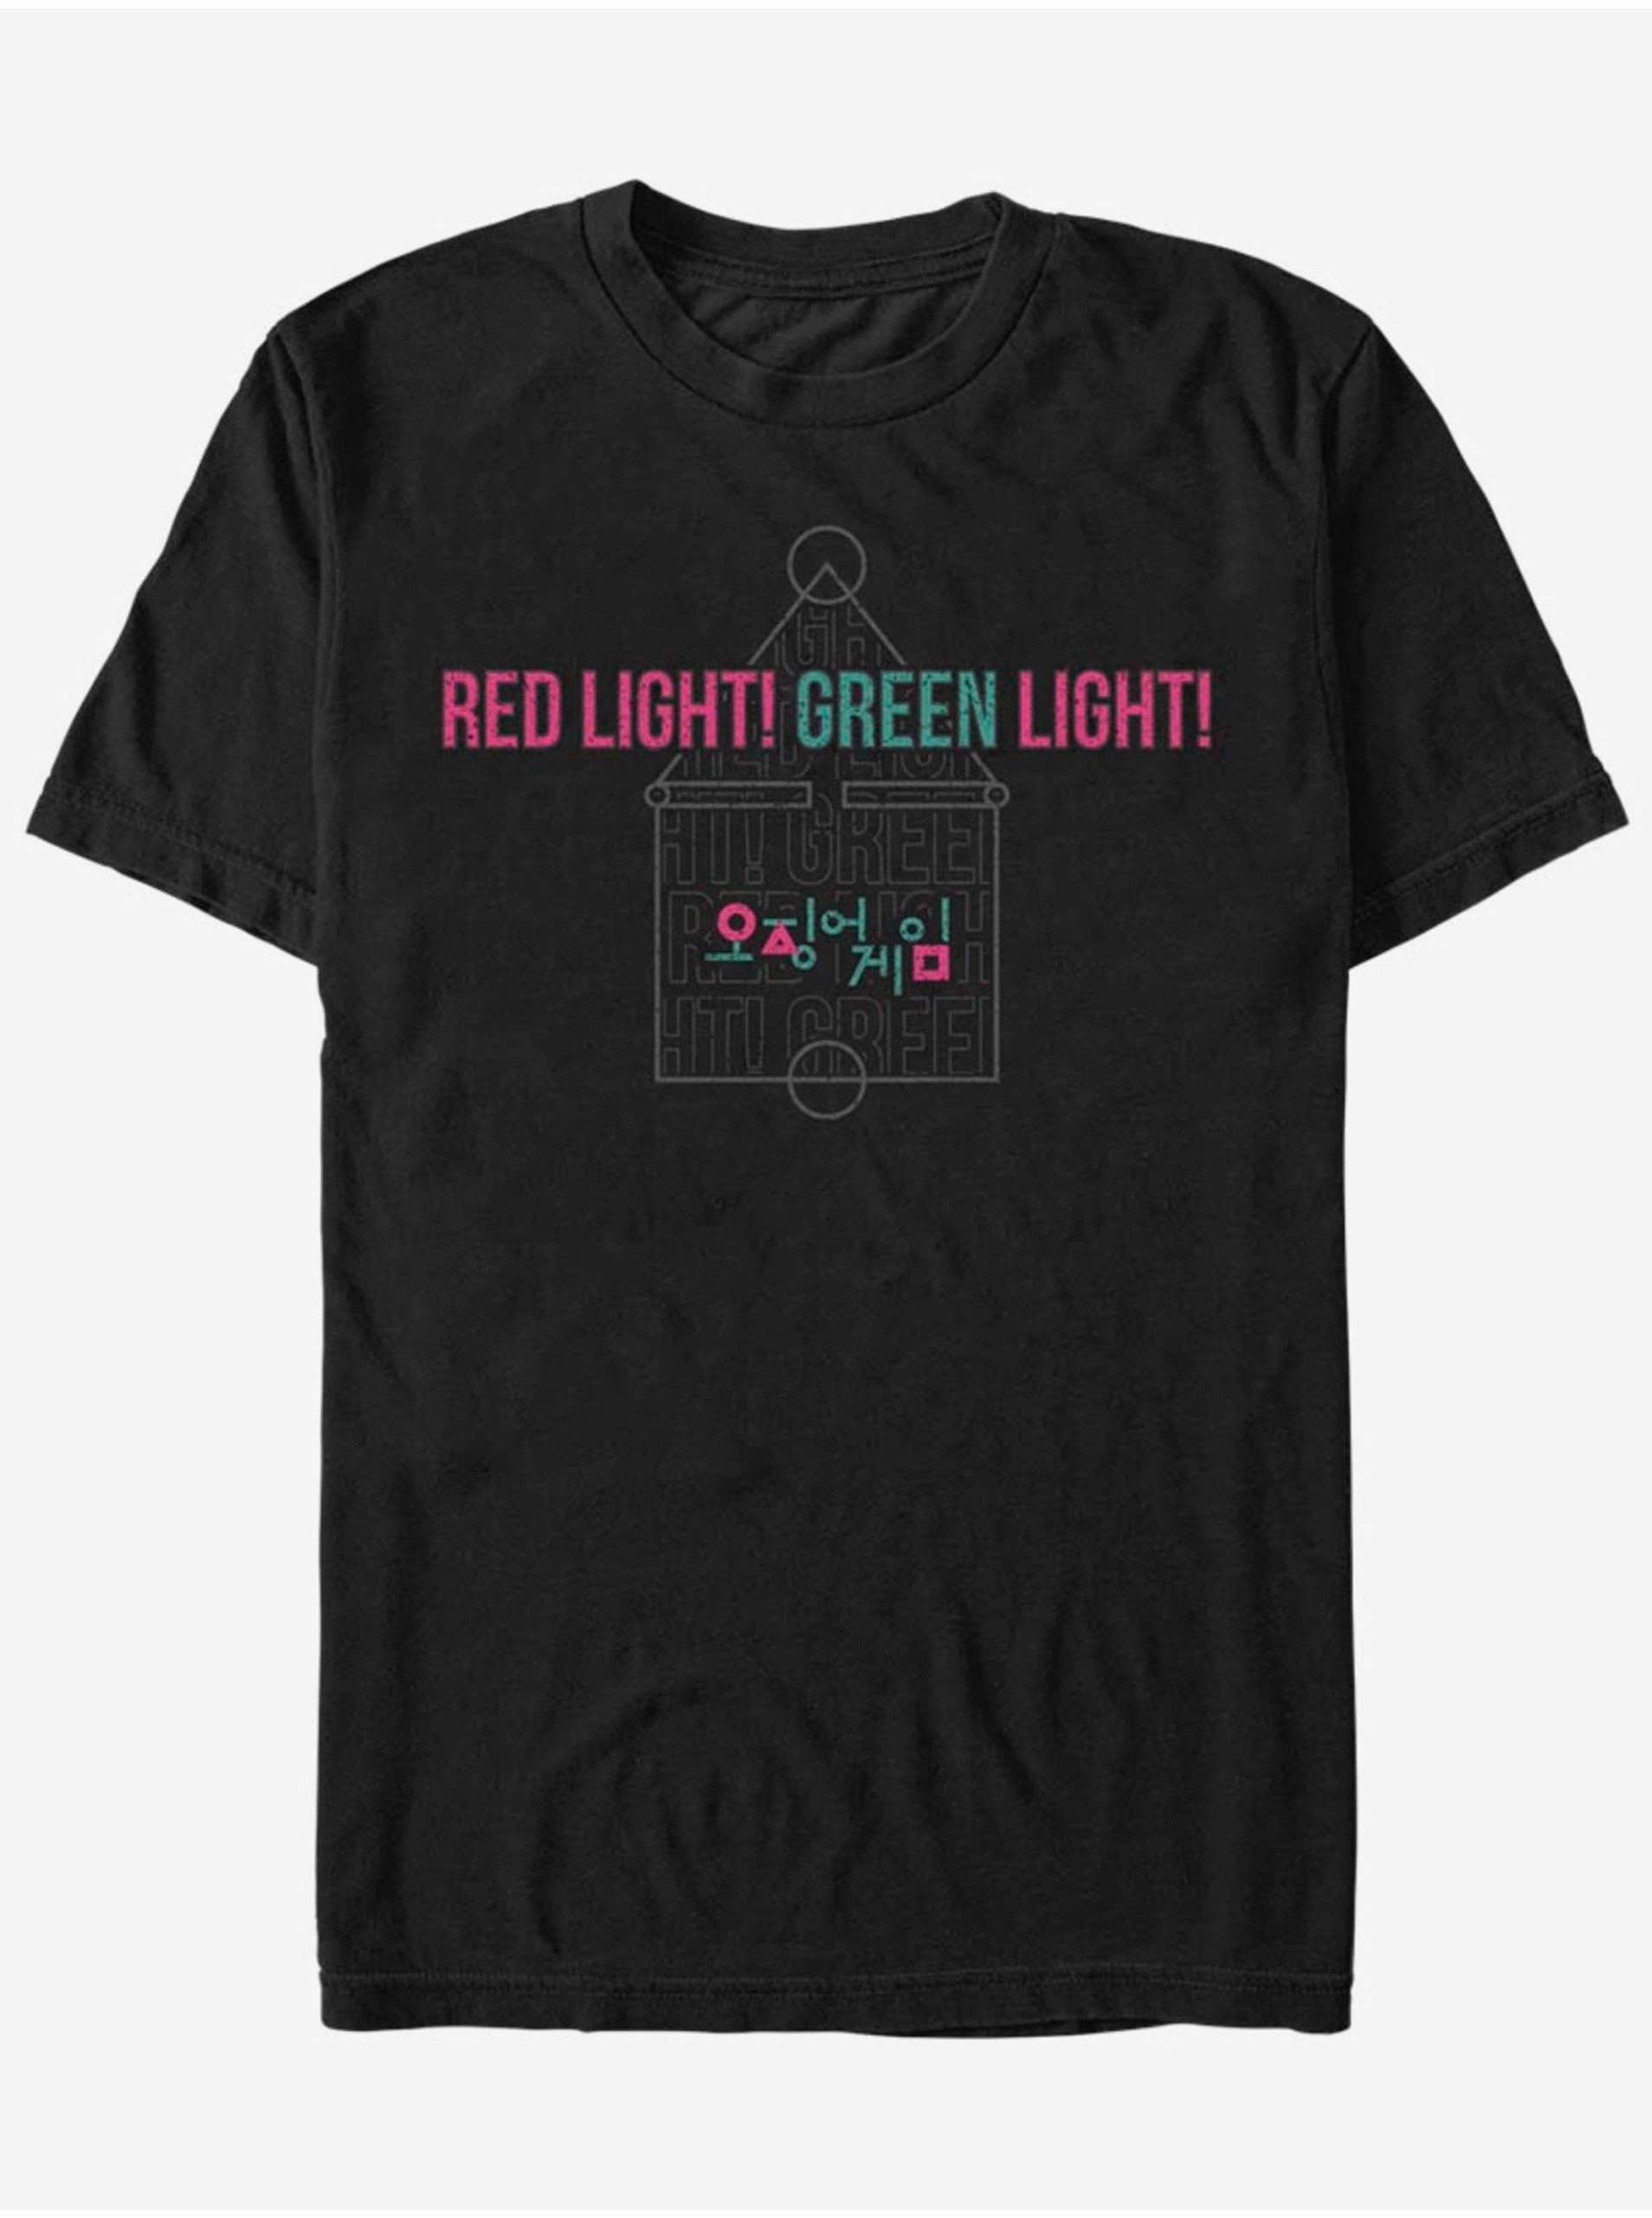 Lacno Zelené světlo, červené světlo Hra na oliheň ZOOT. FAN Netflix - unisex tričko